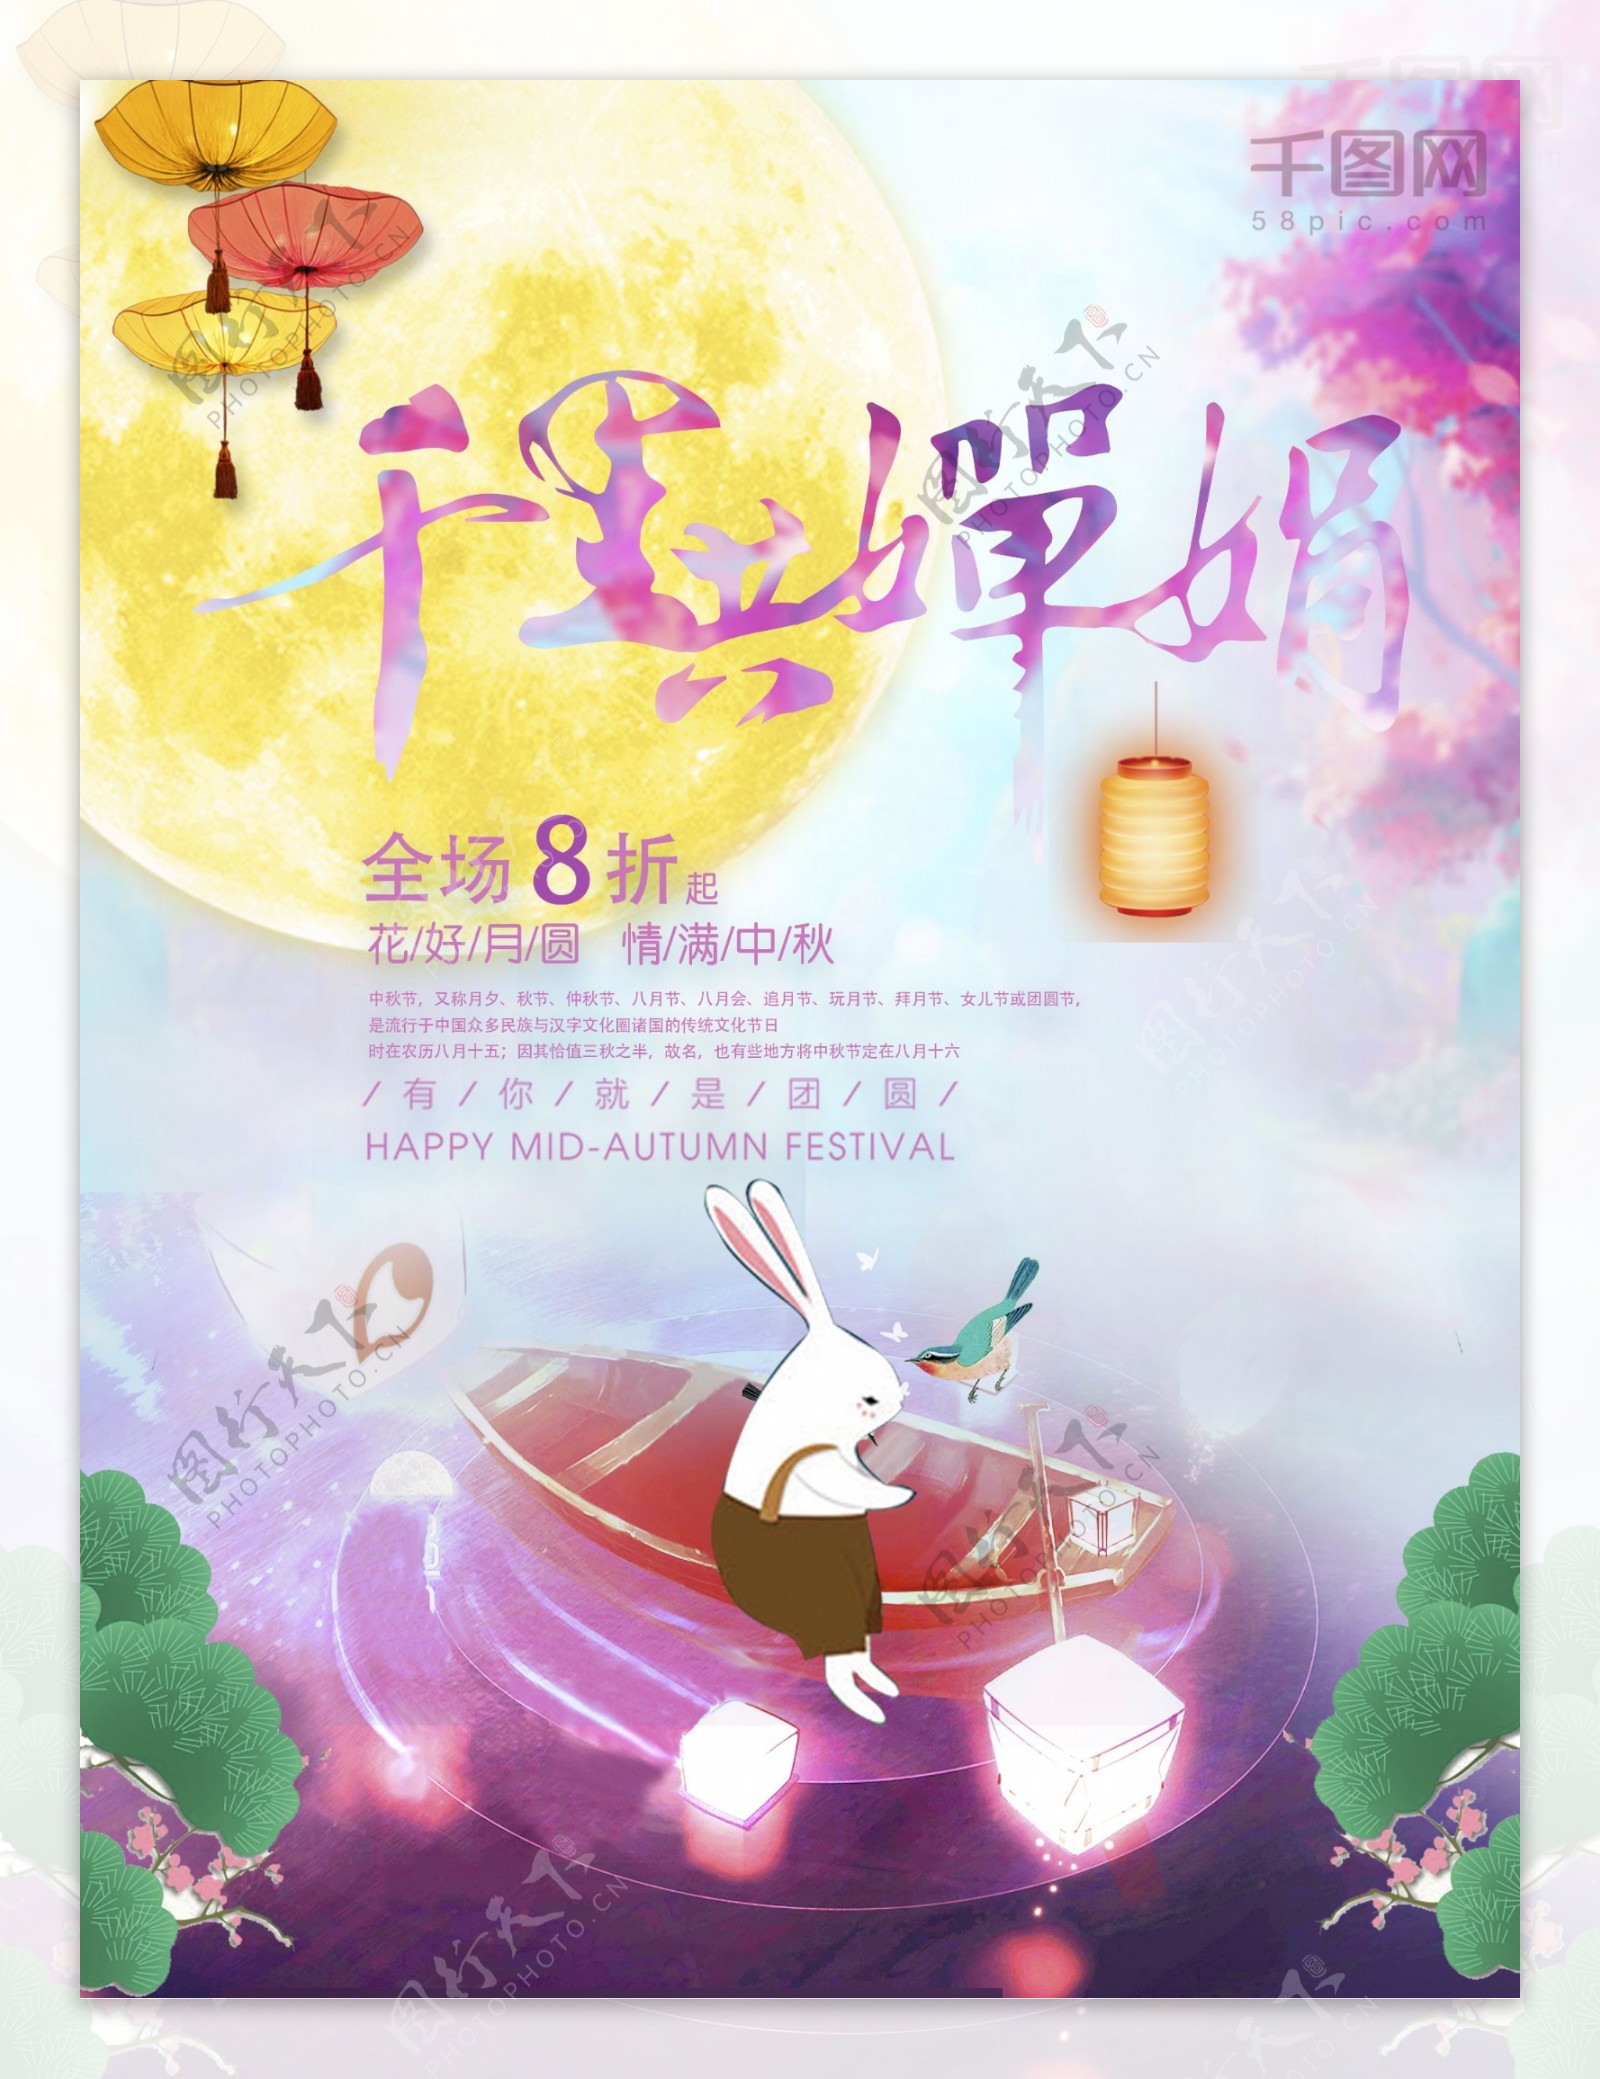 千里共婵娟中秋兔子月圆促销海报设计